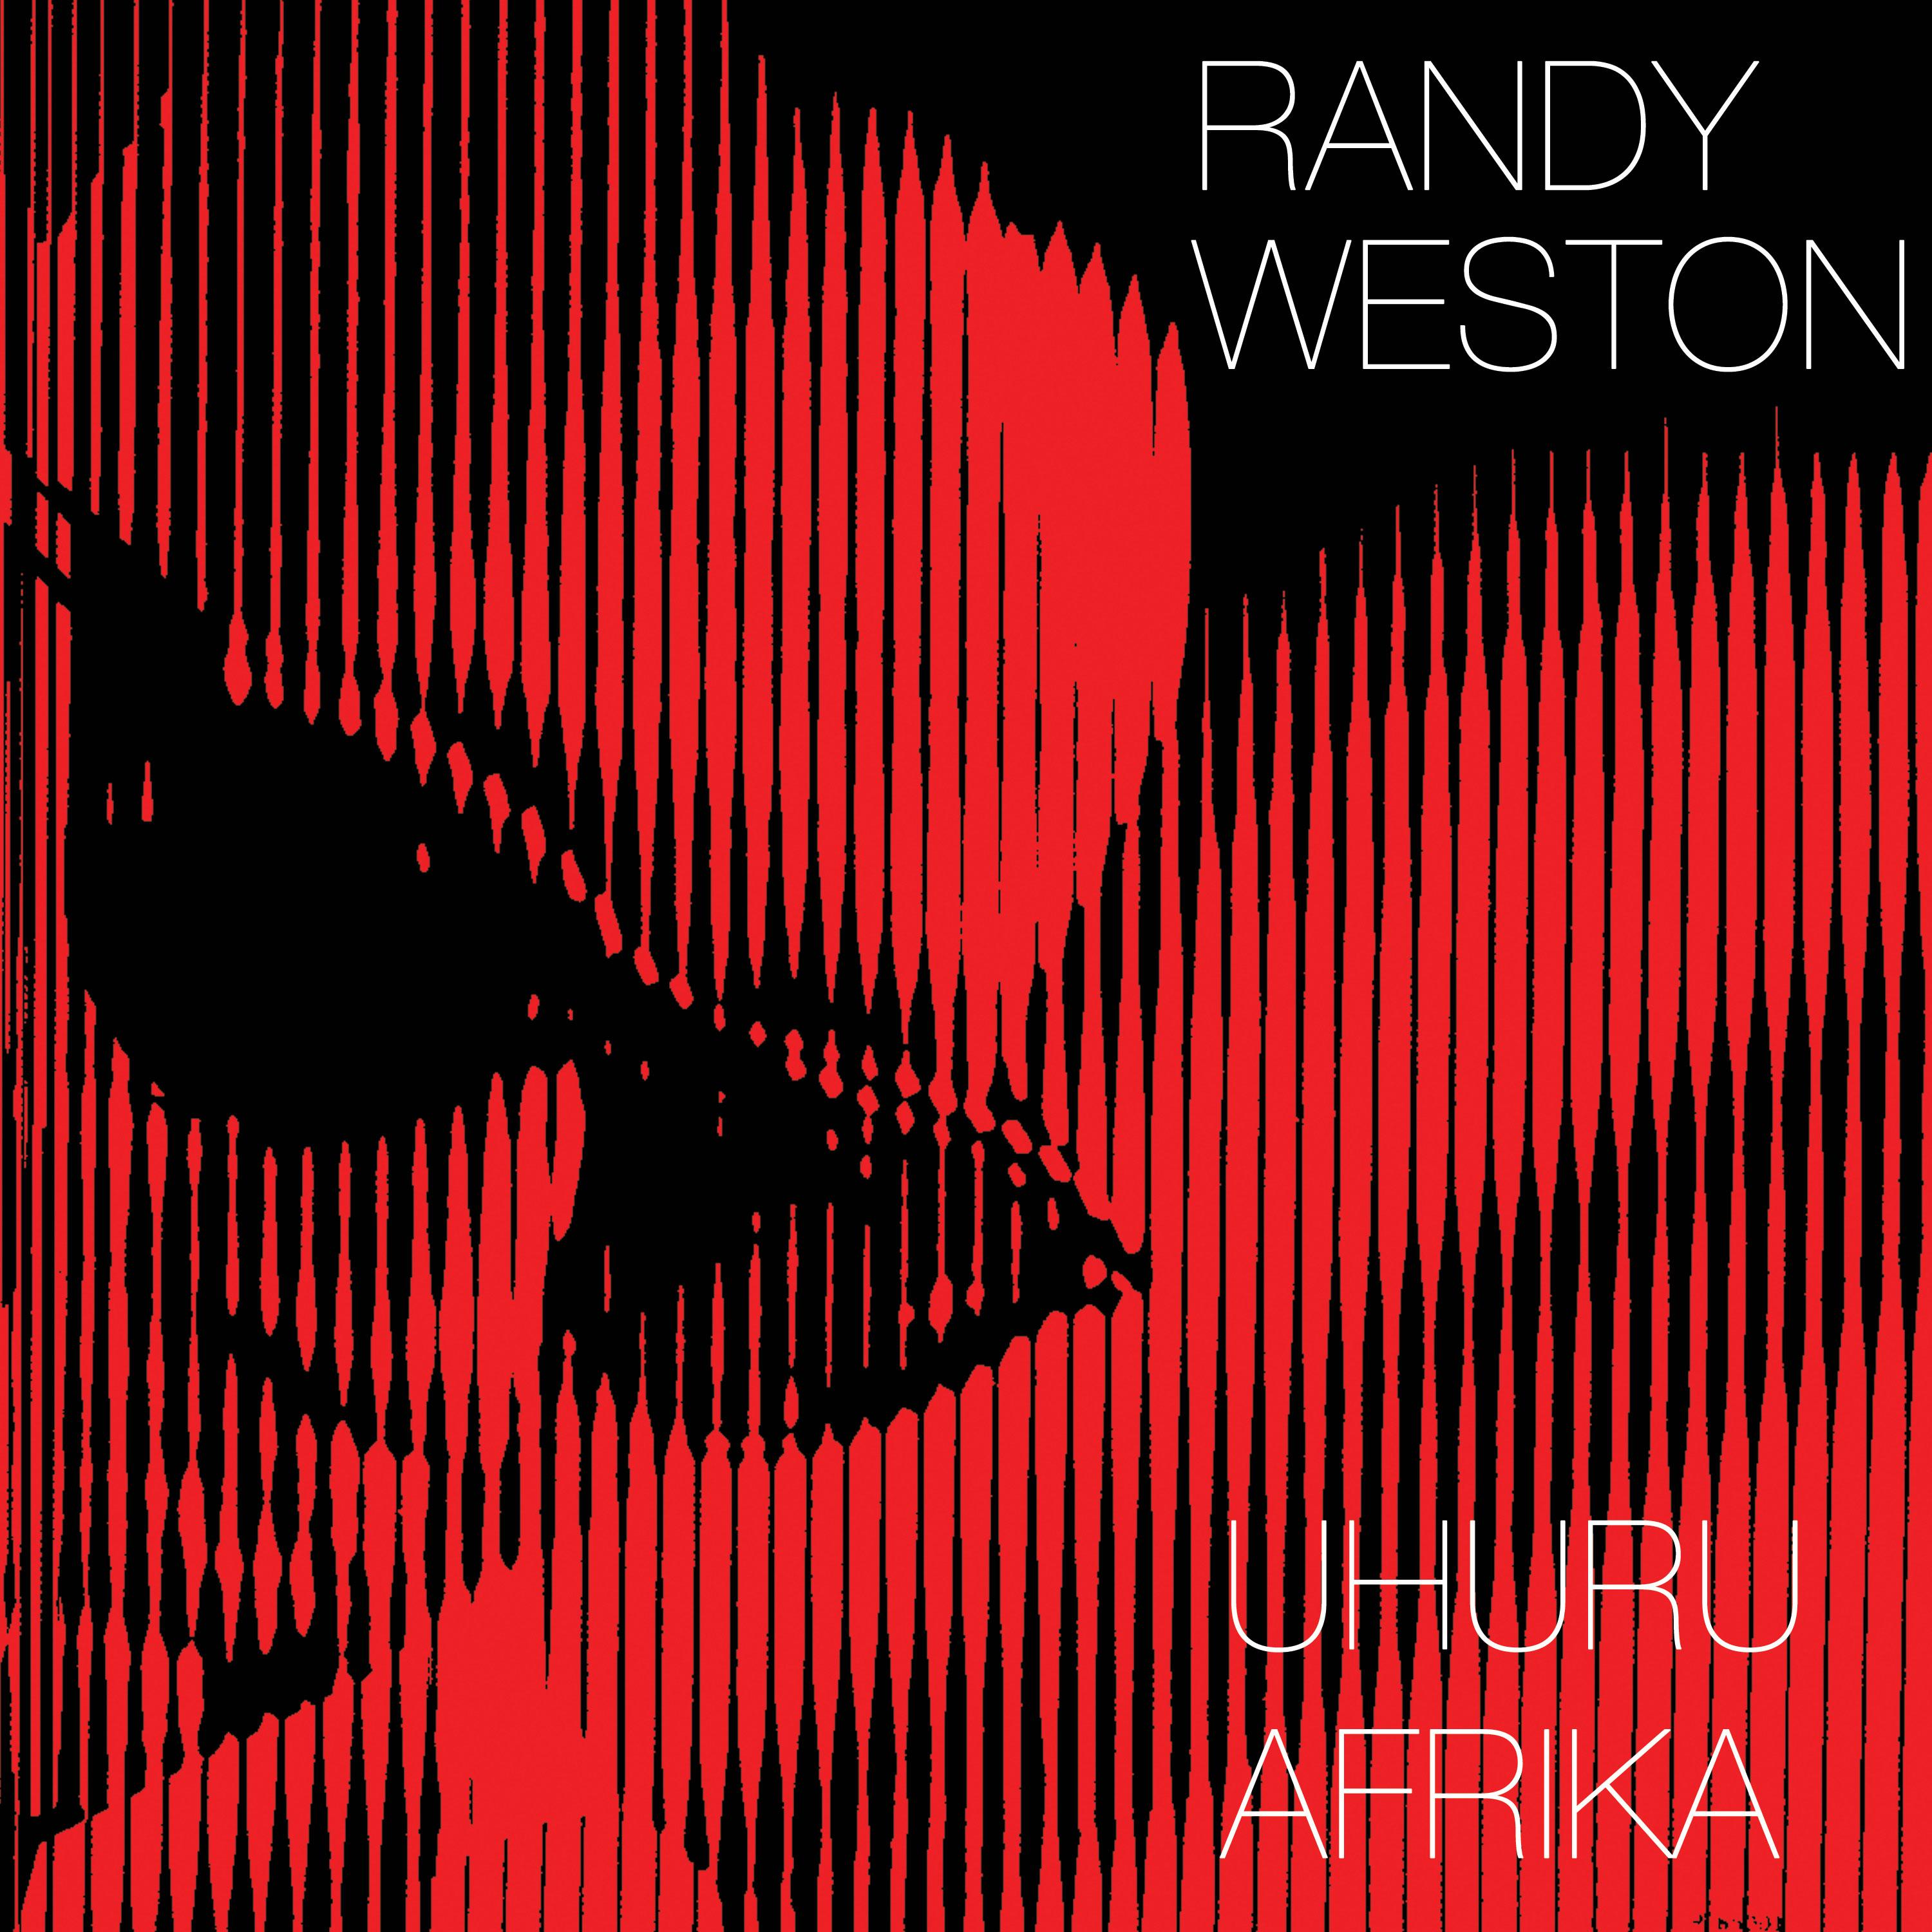 Uhuru Afrika (Bonus Track Version)